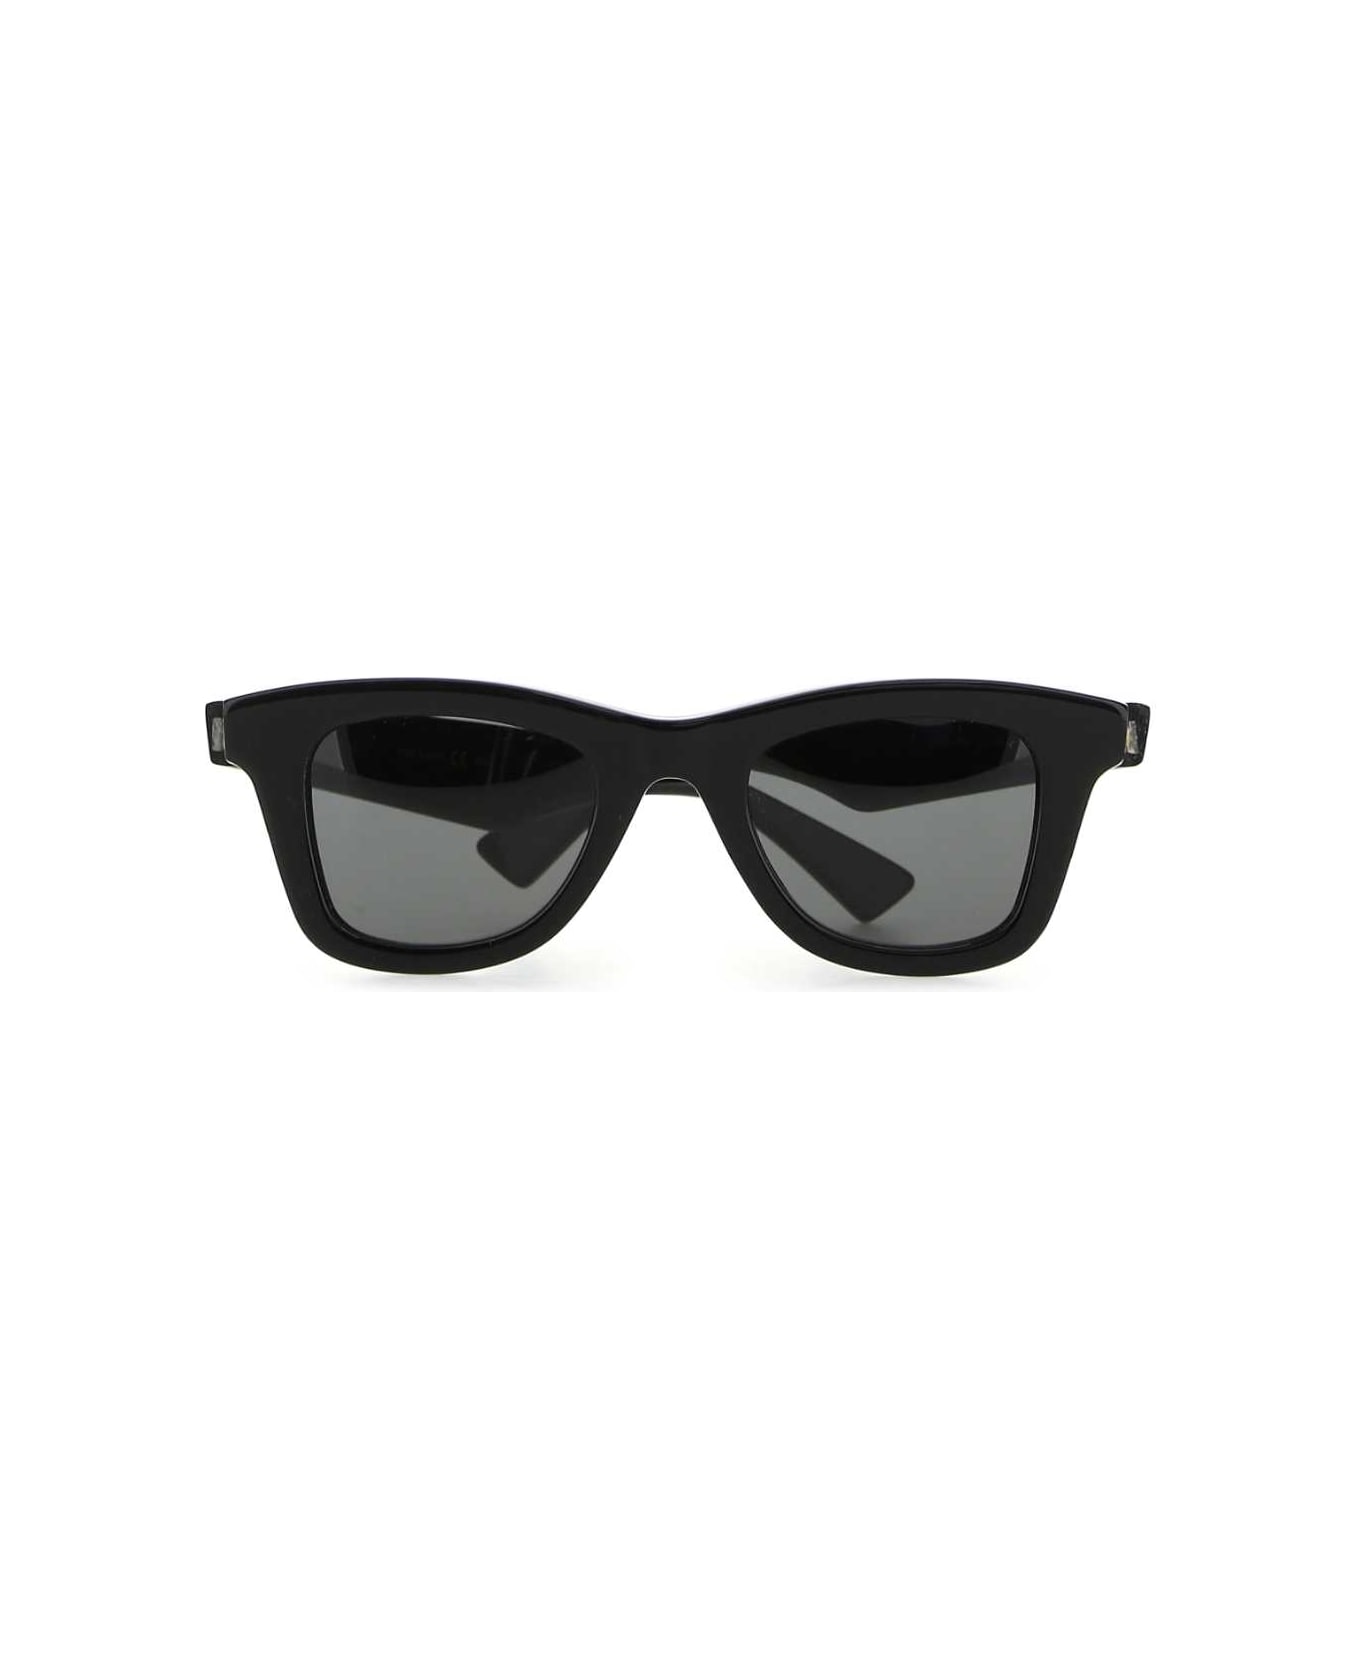 Bottega Veneta Black Acetate Classic Sunglasses - 1049